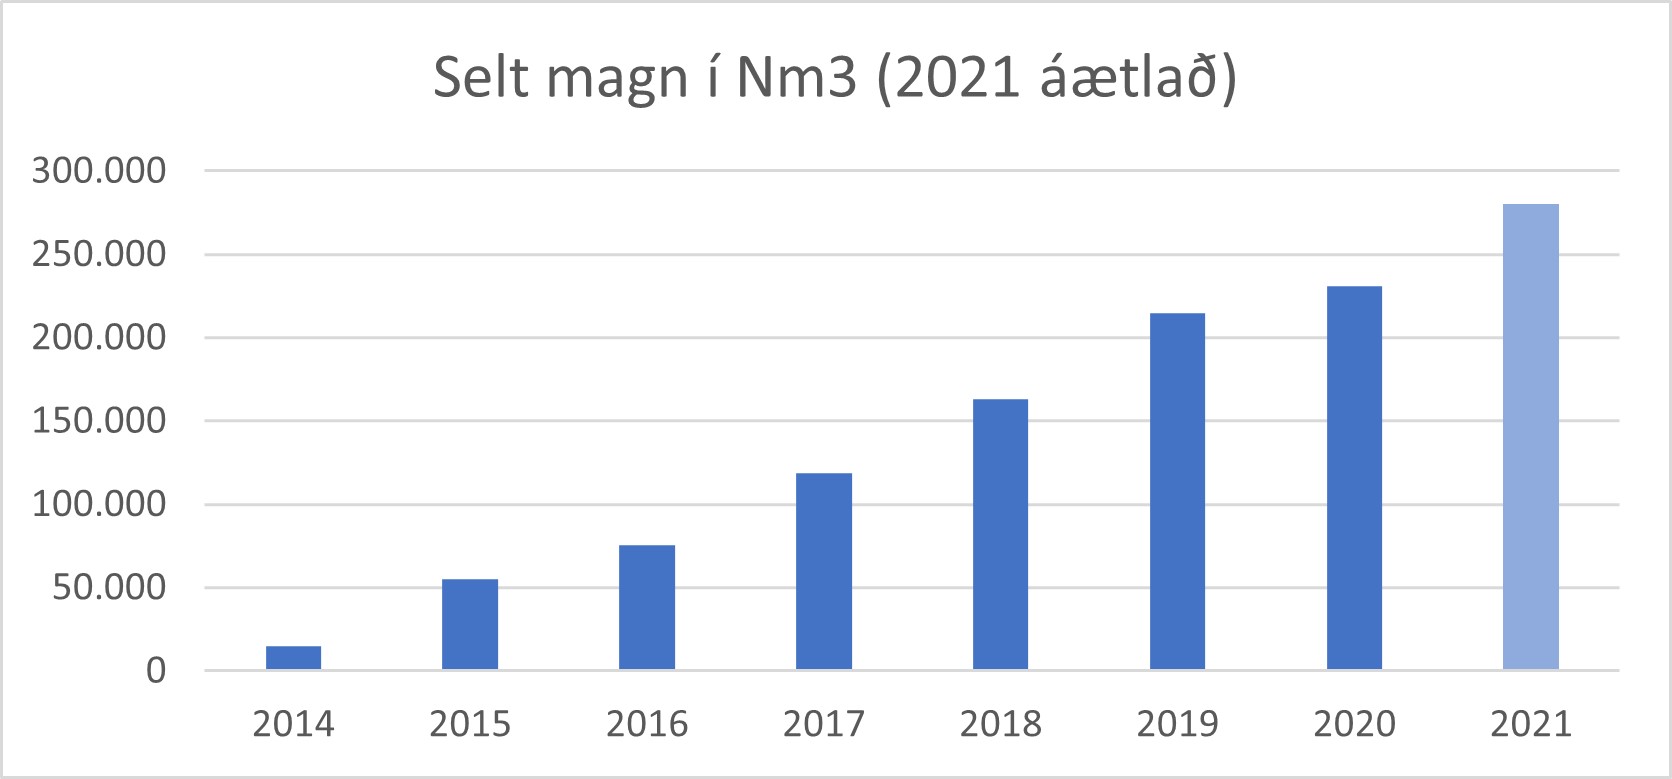 Myndin sýnir selt magn metans frá árinu 2014 (ath. að árið 2021 er áætlað)